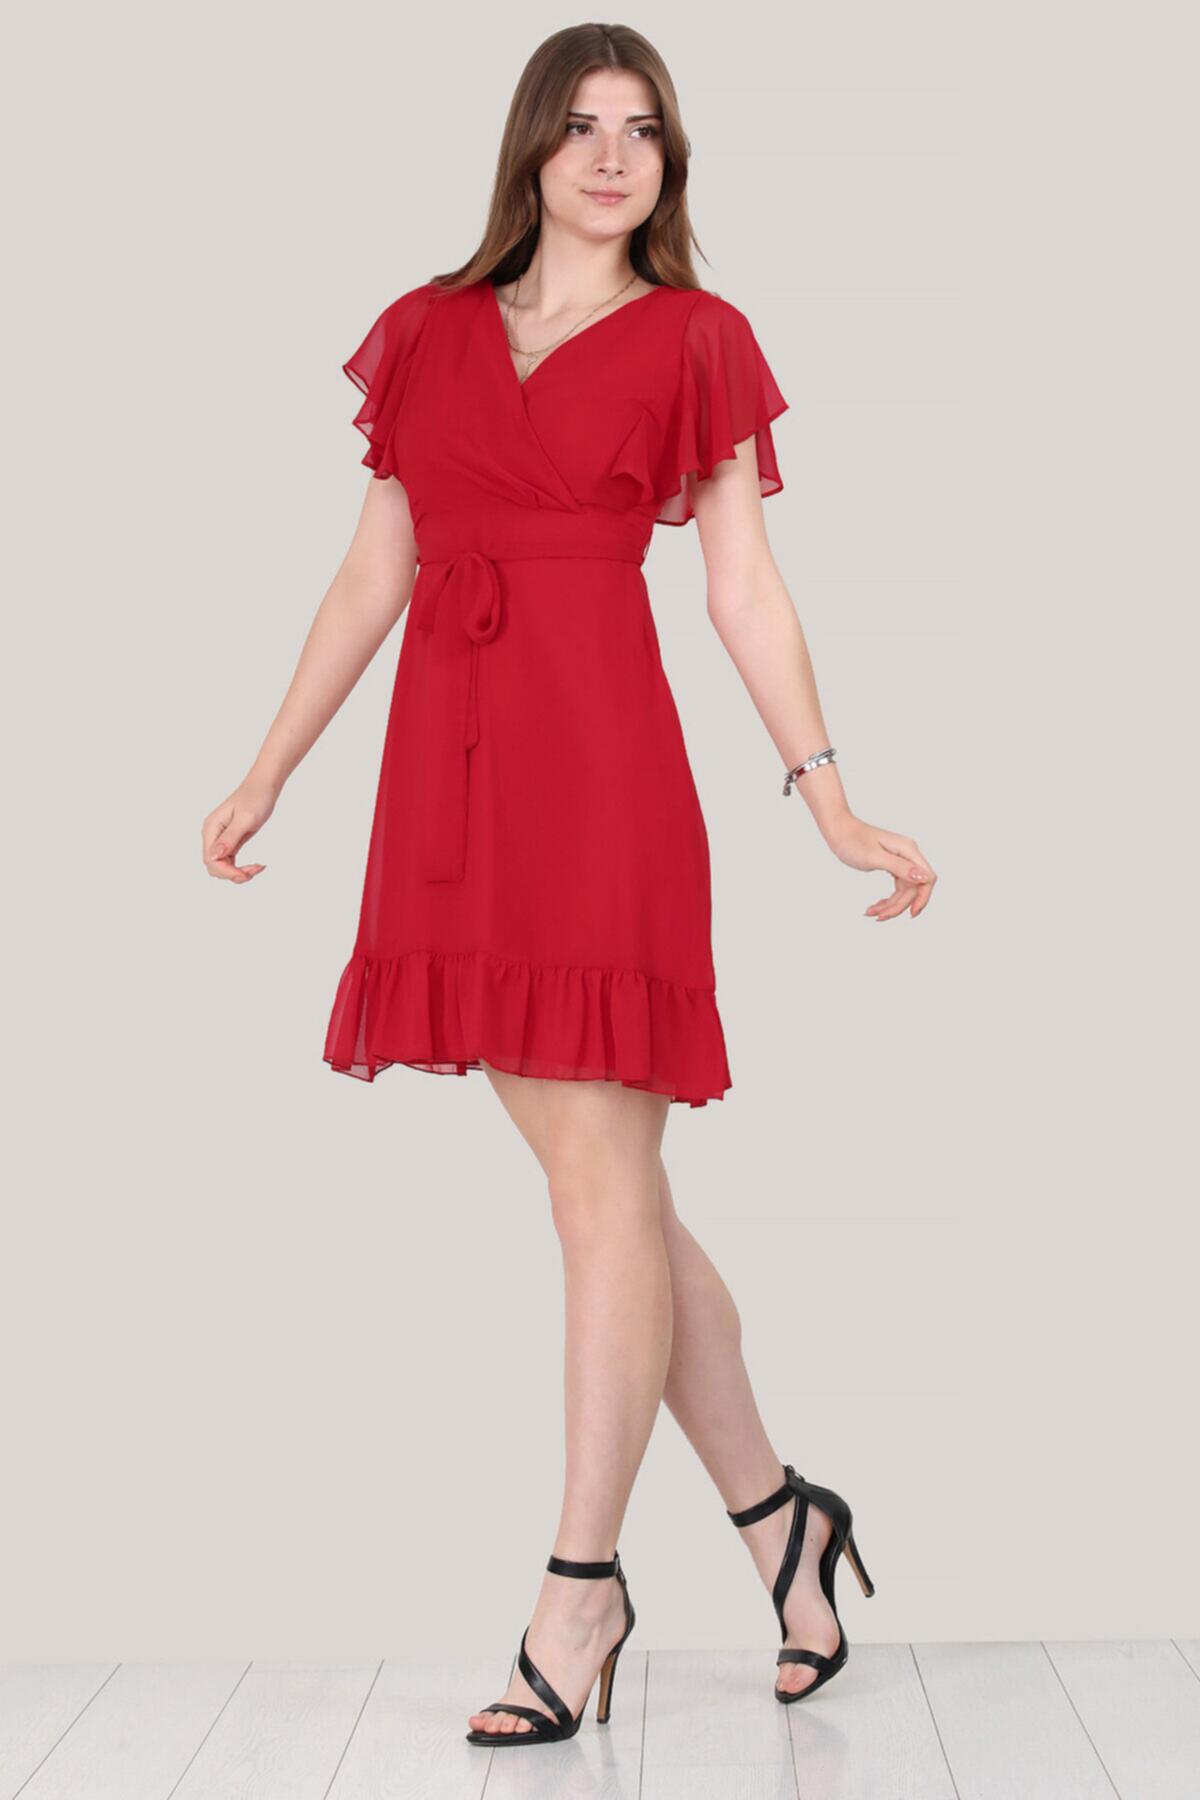 Kadın Kısa Şifon Elbise Kırmızı | Patırtı